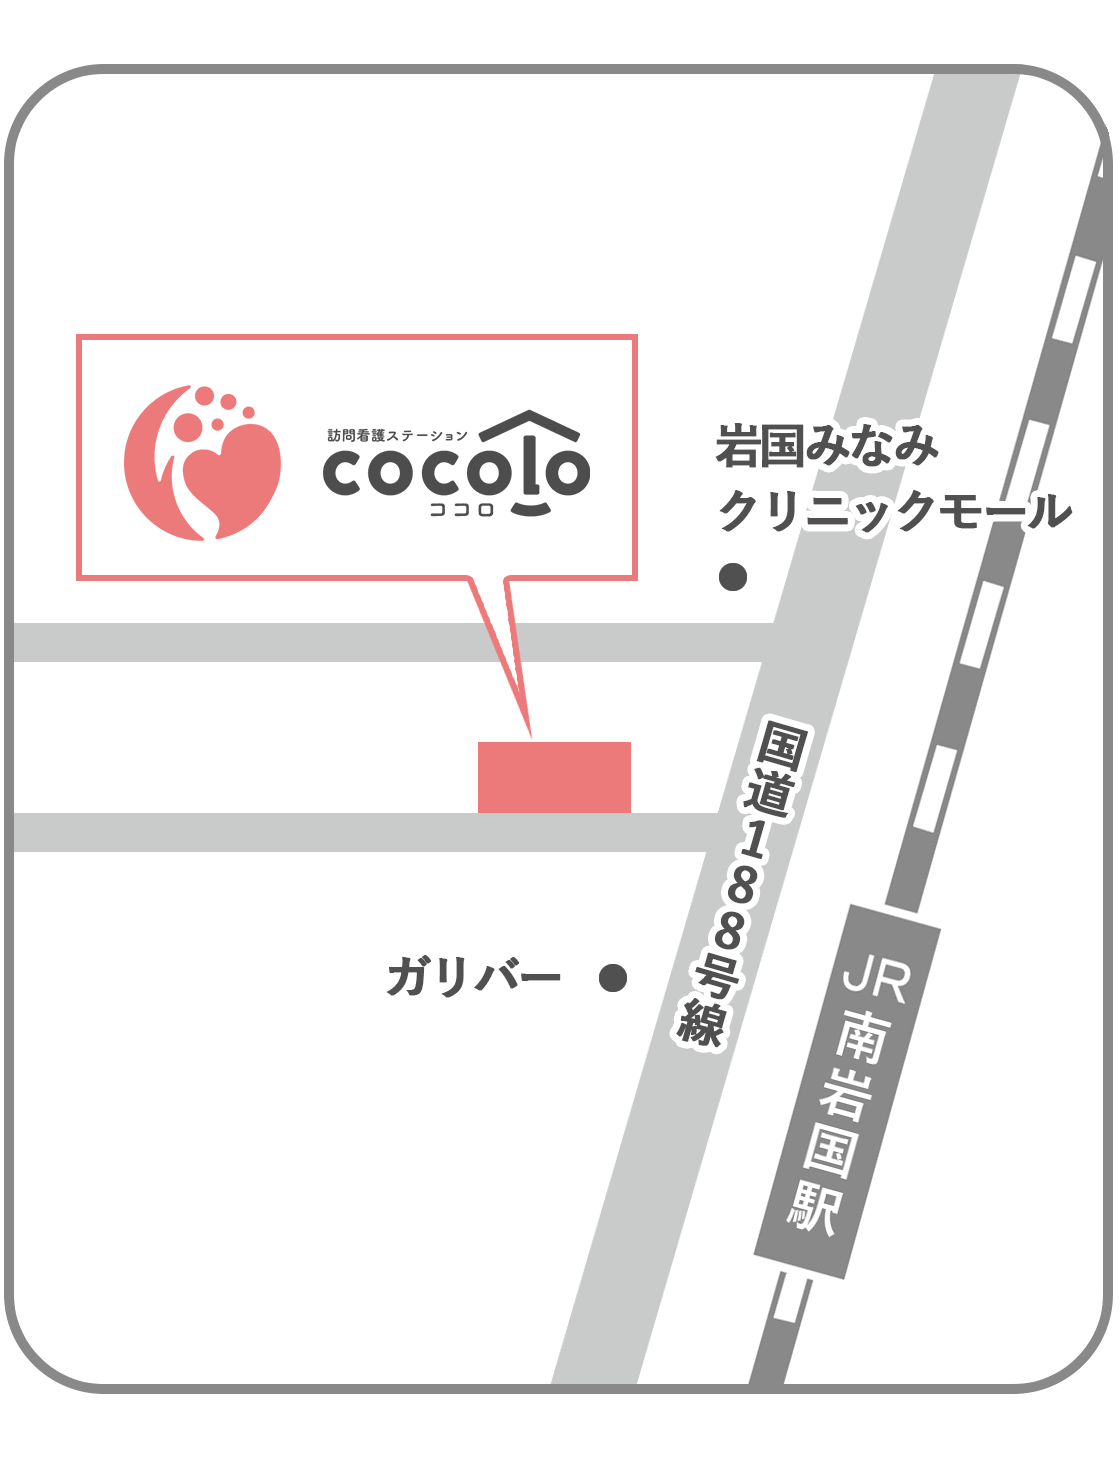 ココロの地図